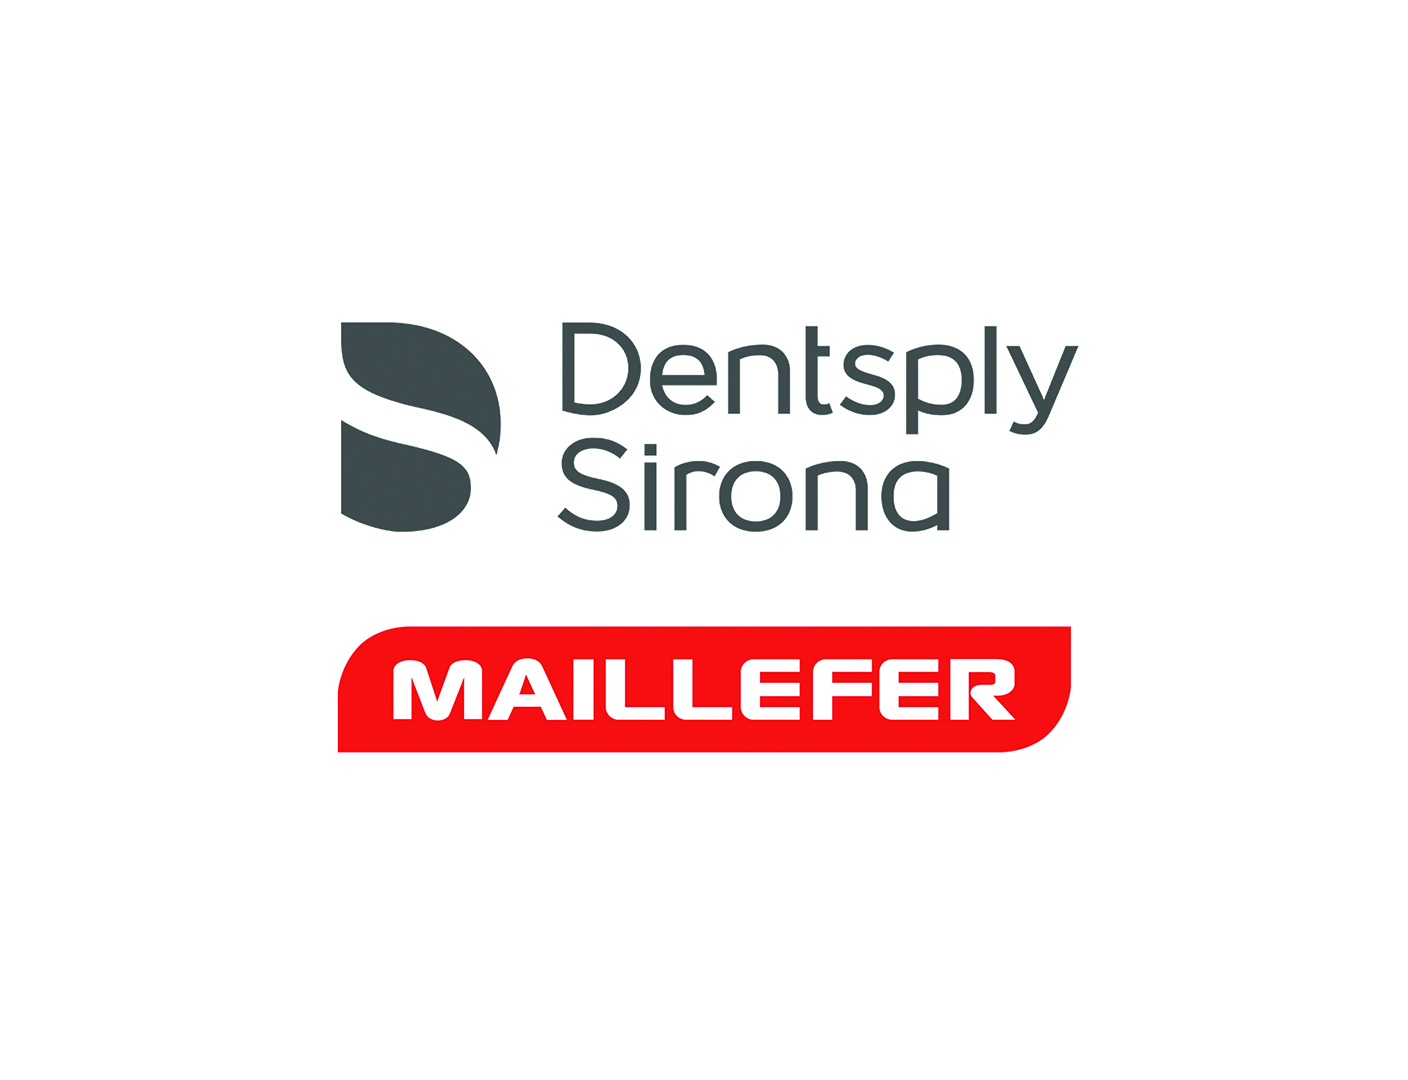 Dentsply Sirona Italia torna a gestire direttamente la vendita della linea Maillefer nel canale dei depositi dentali - Doctor Os